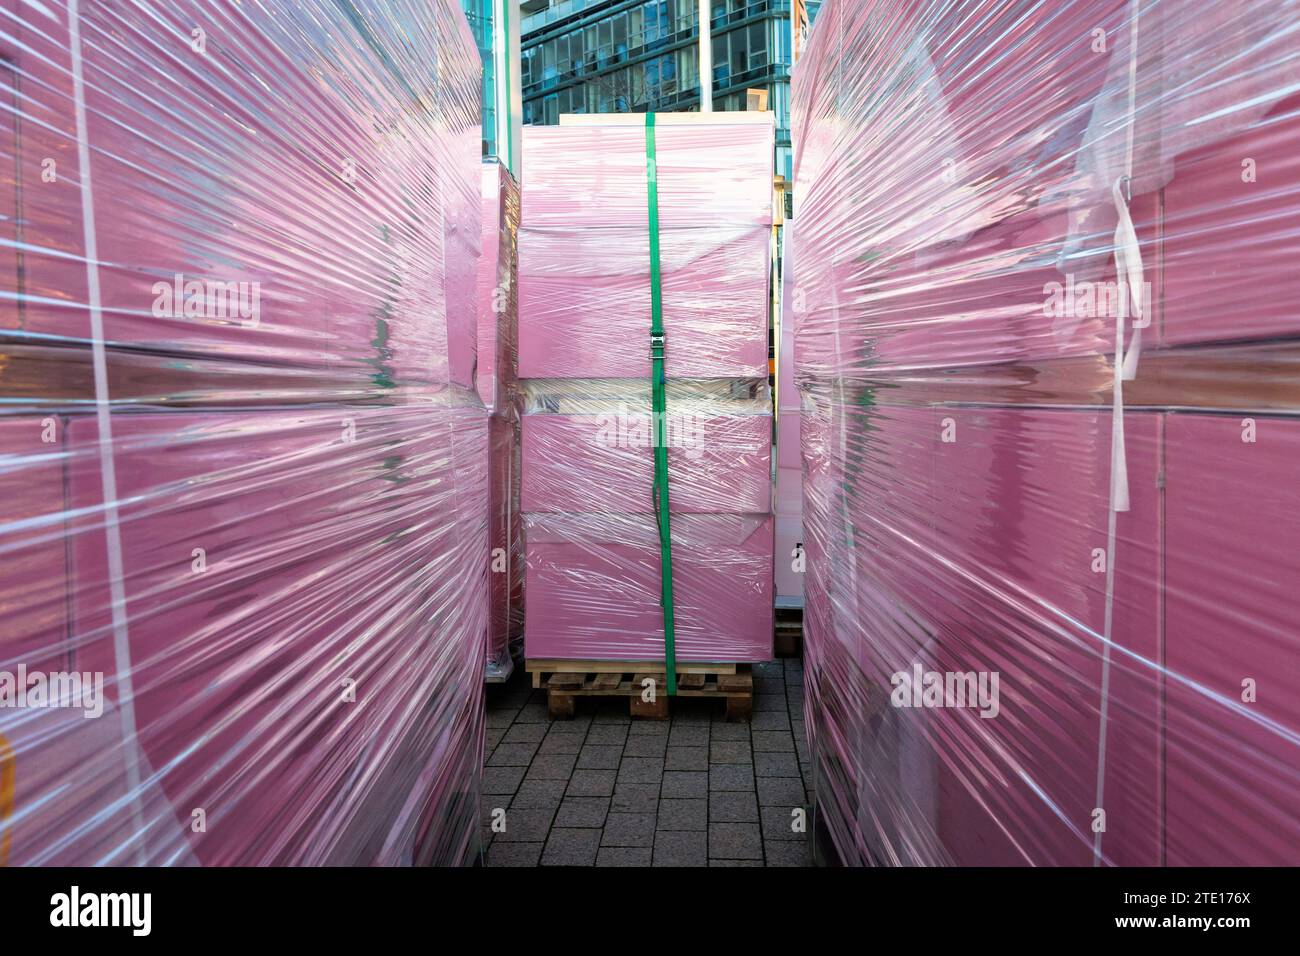 Pinkfarbene Boxen in Folie auf Paletten für Transport, Köln, Deutschland. In Folie eingepackte rosa Kisten stehen auf Paletten zum Abtransport, Koel Stockfoto